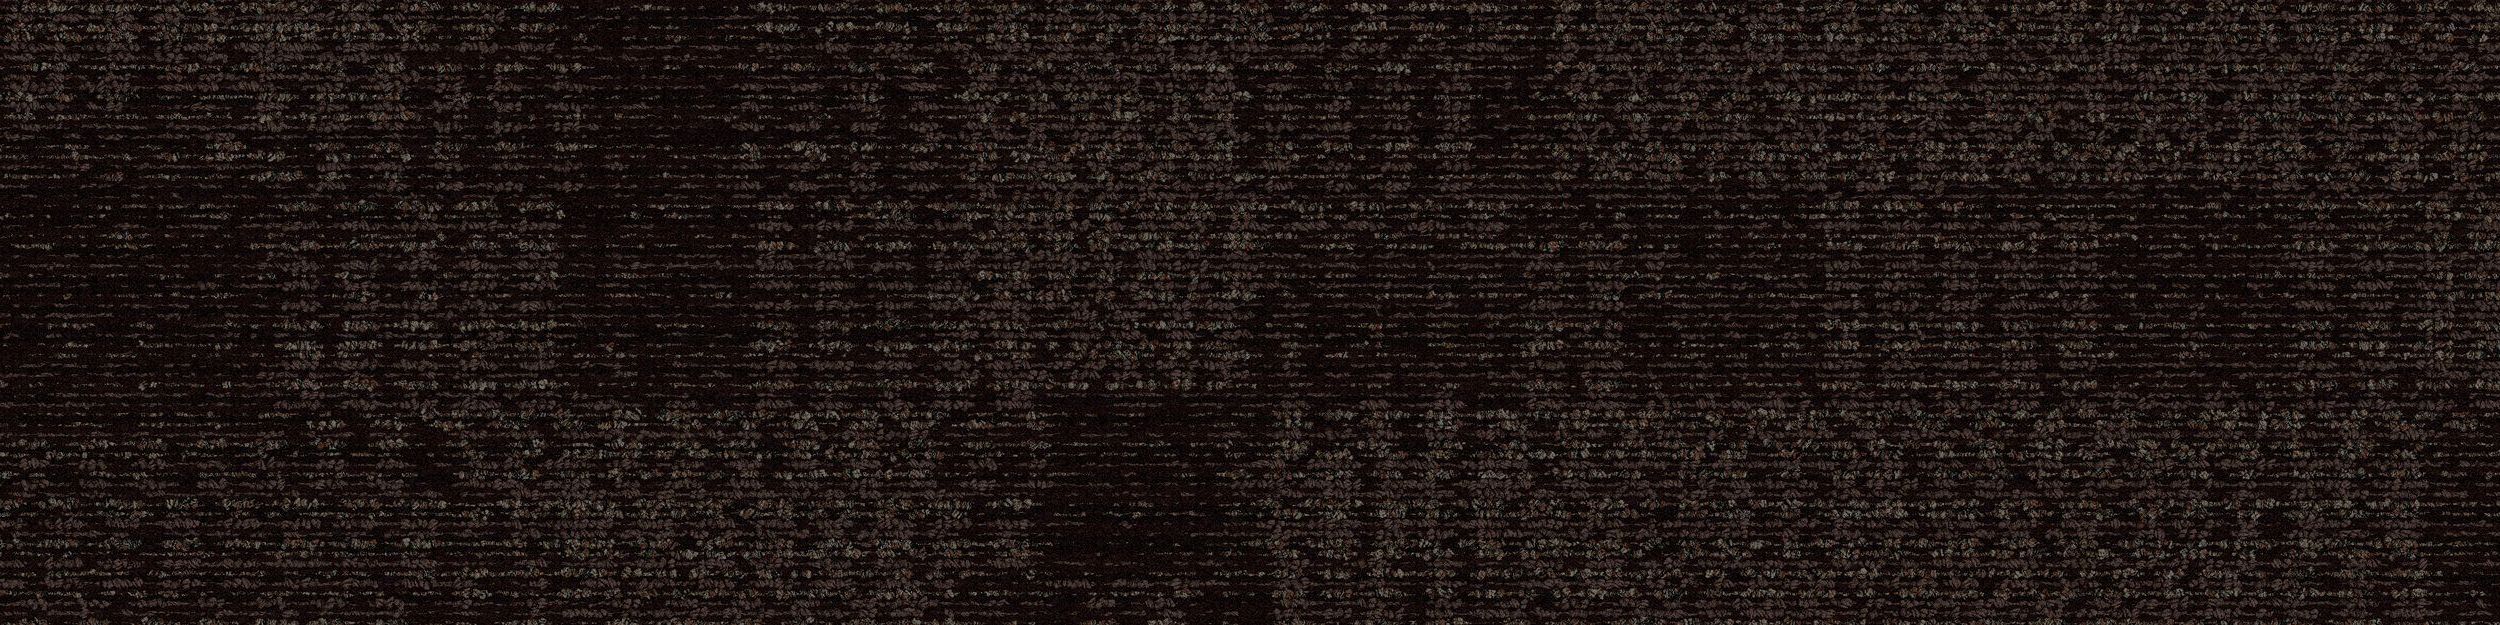 RMS 705 Carpet Tile In Hot Cocoa imagen número 2